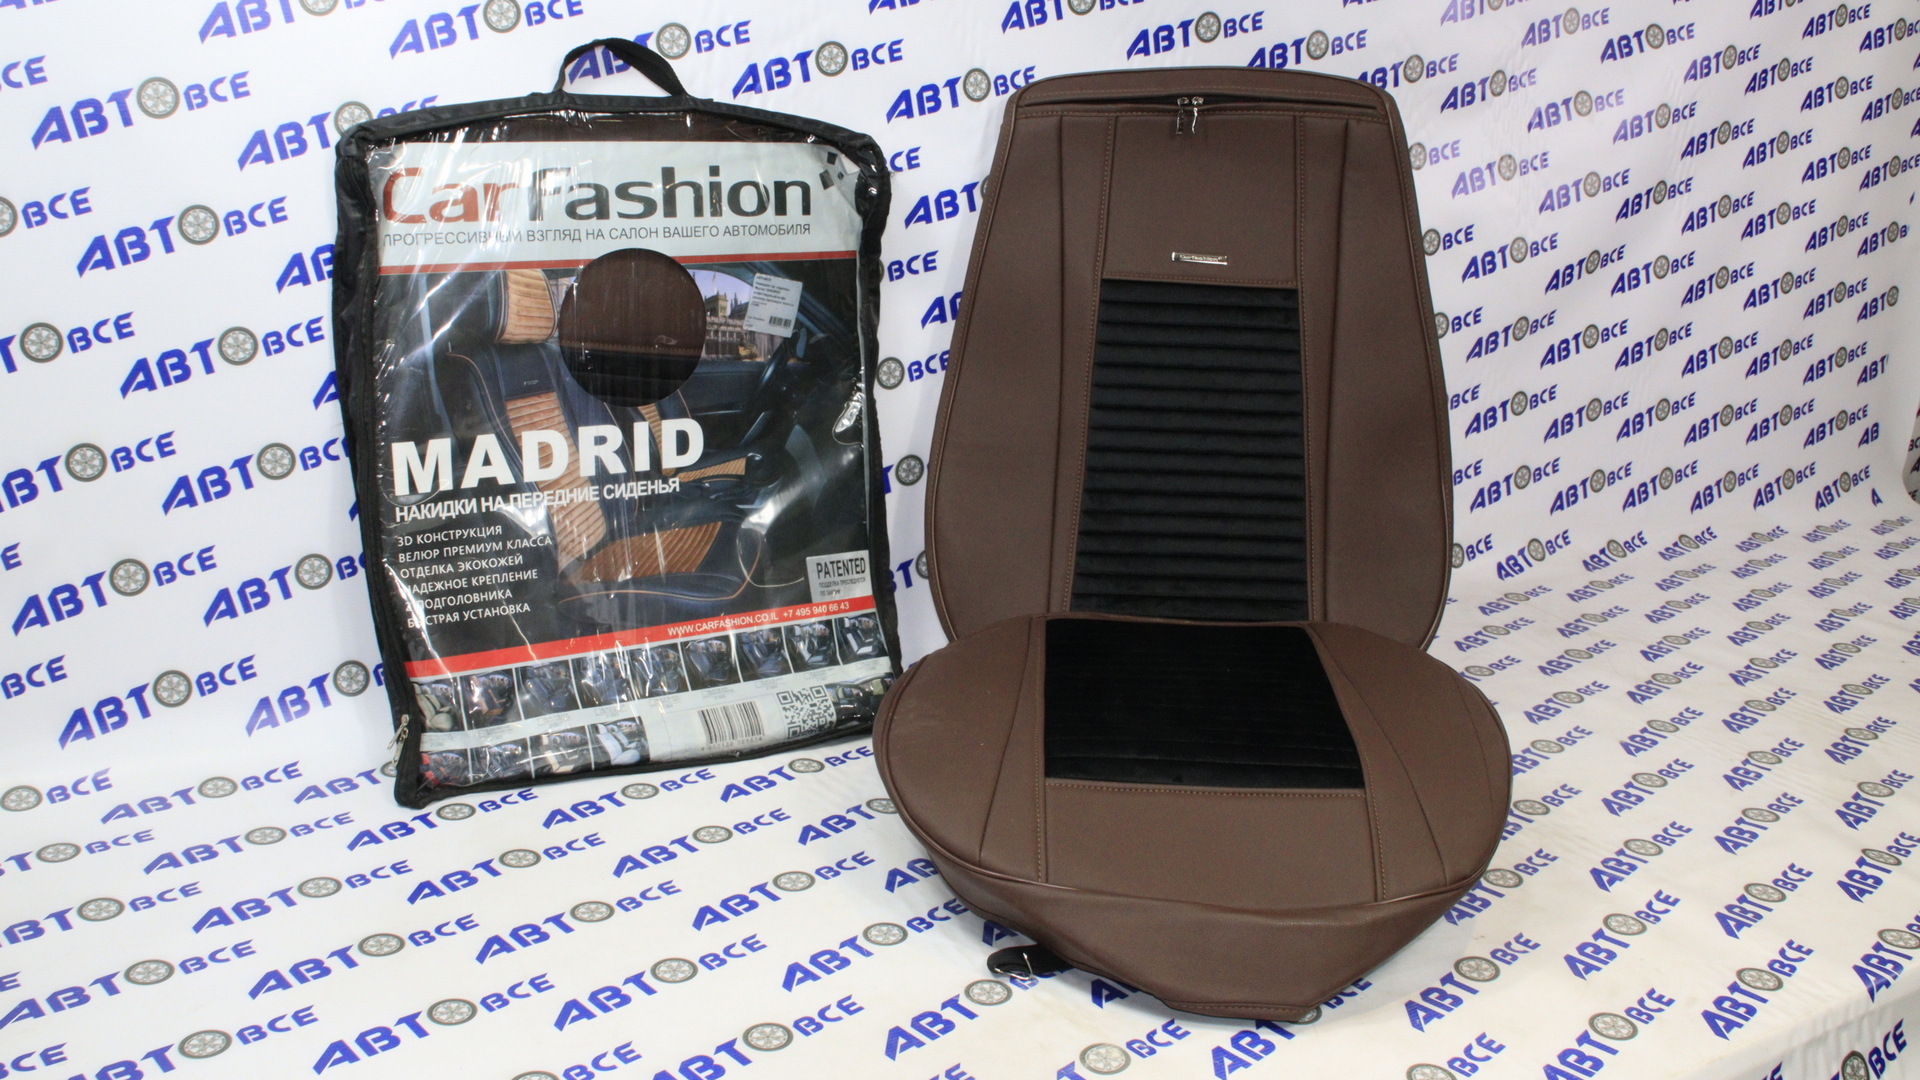 Накидки на сиденье Фронт MADRID кофе/черный/кофе (велюр премиум класса экокожа) CAR FASHION